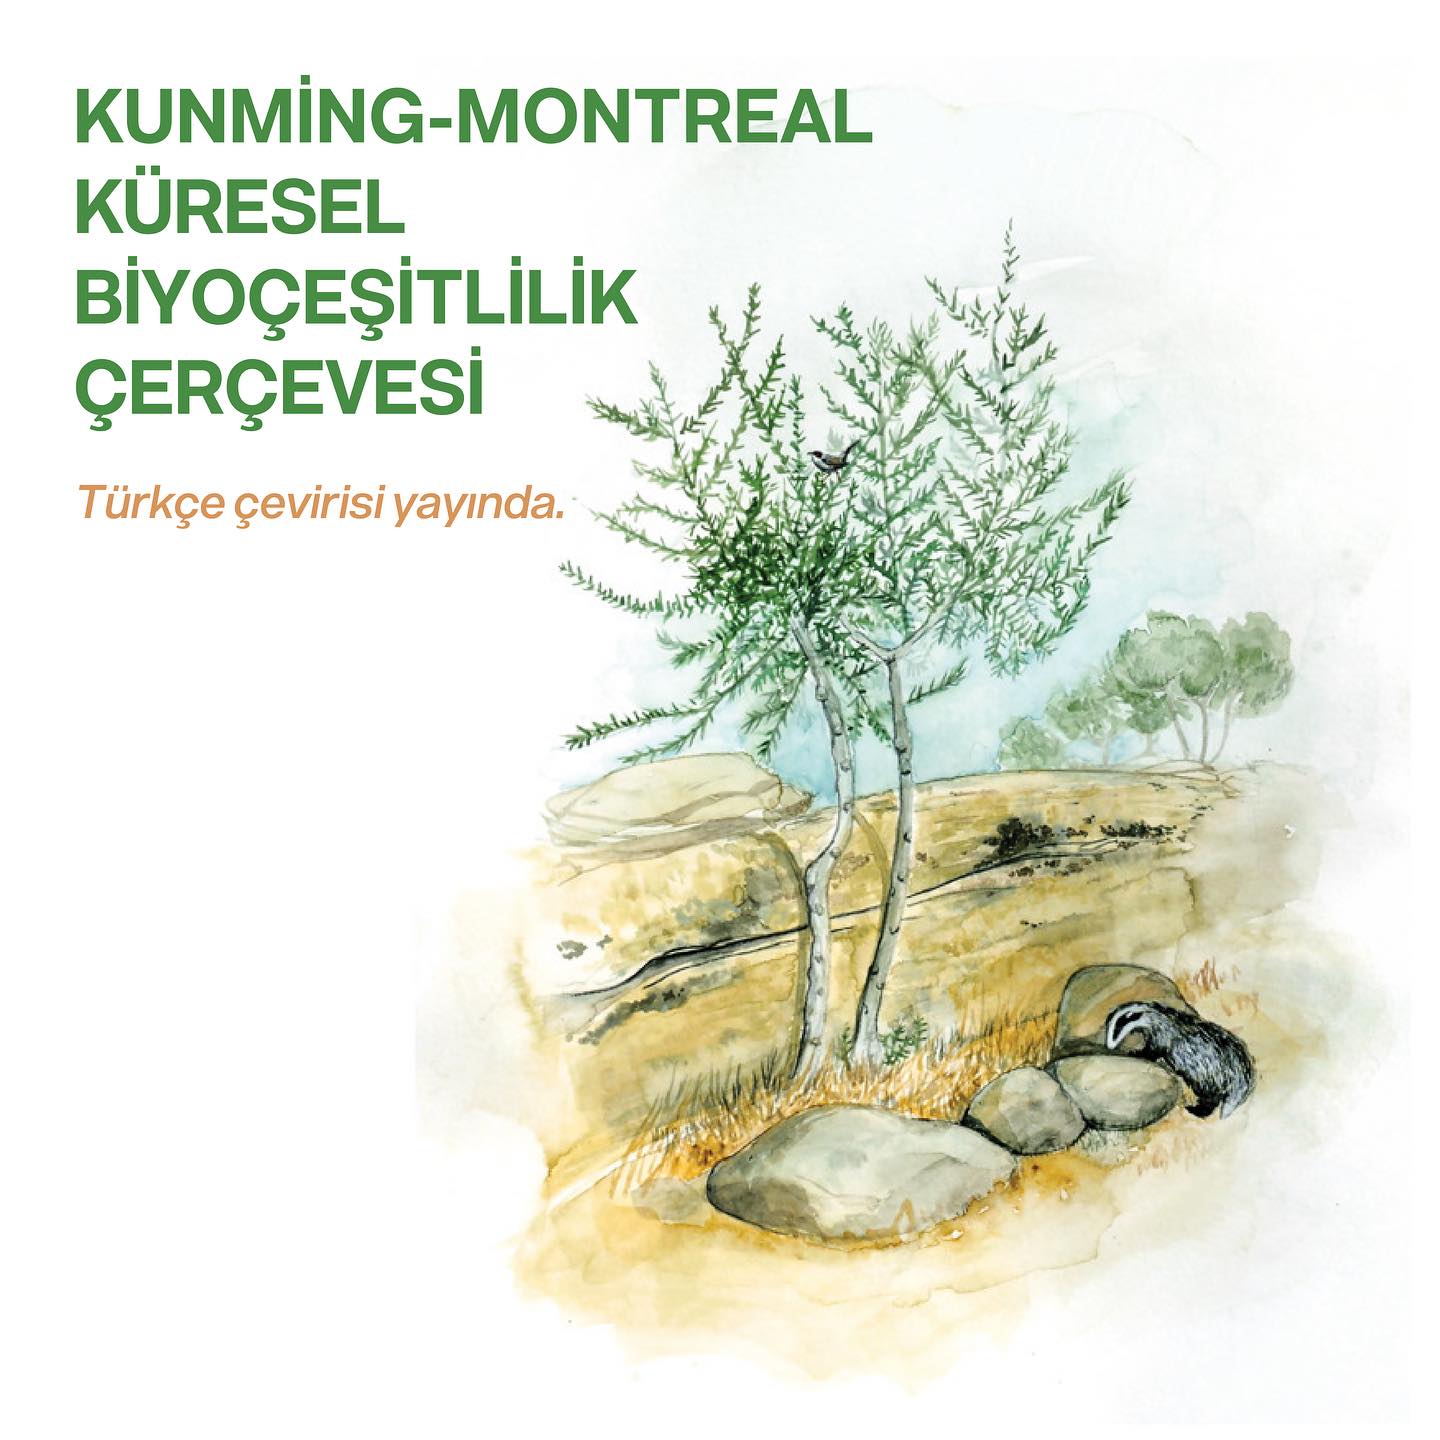 Kunming-Montreal Küresel Biyoçeşitlilik Çerçevesi Türkçe Çevirisi